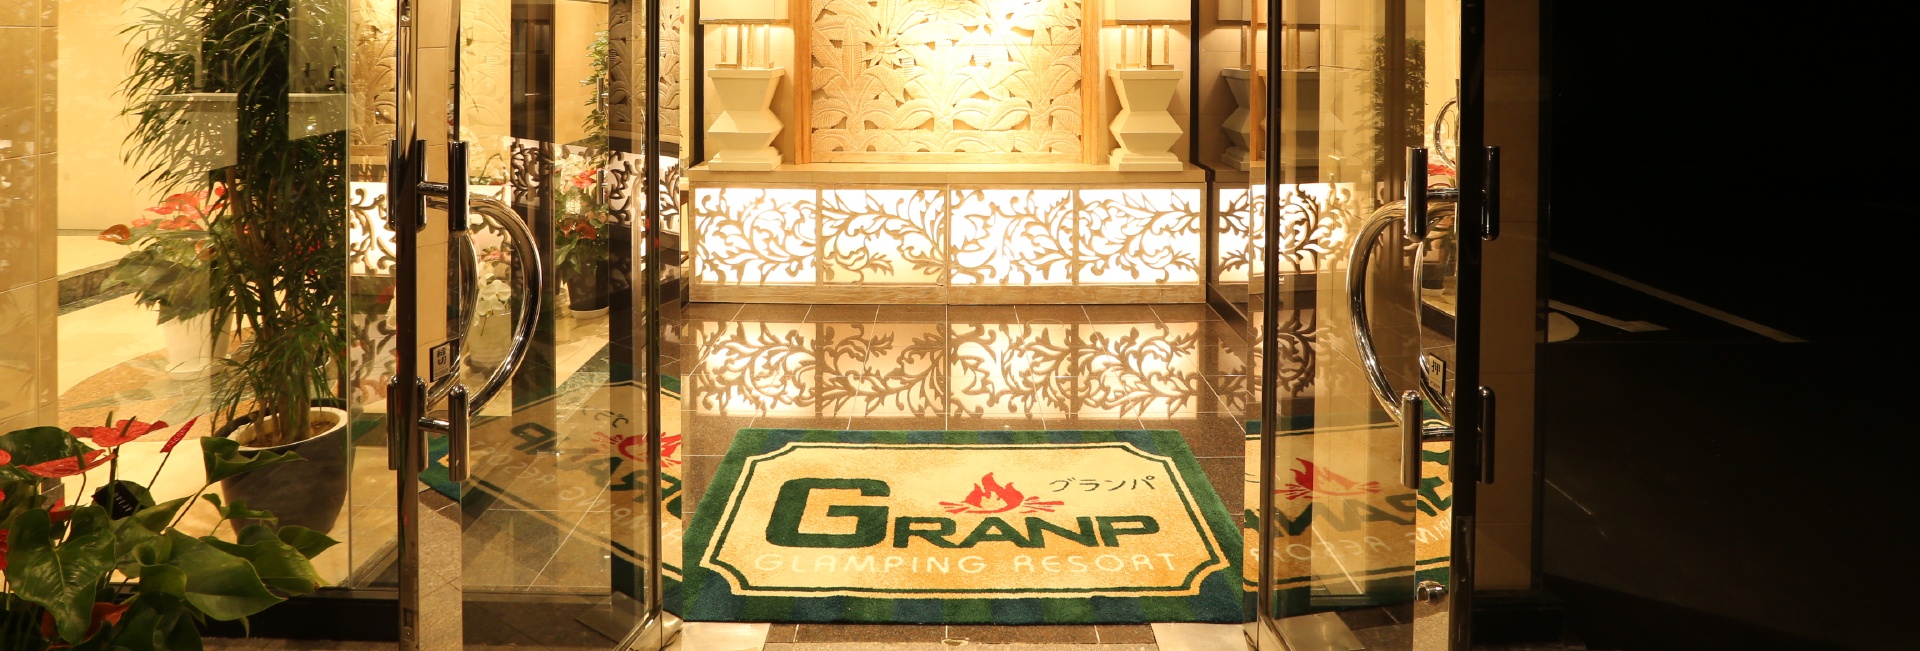 志摩市のグランピングリゾート GRANP(グランパ)